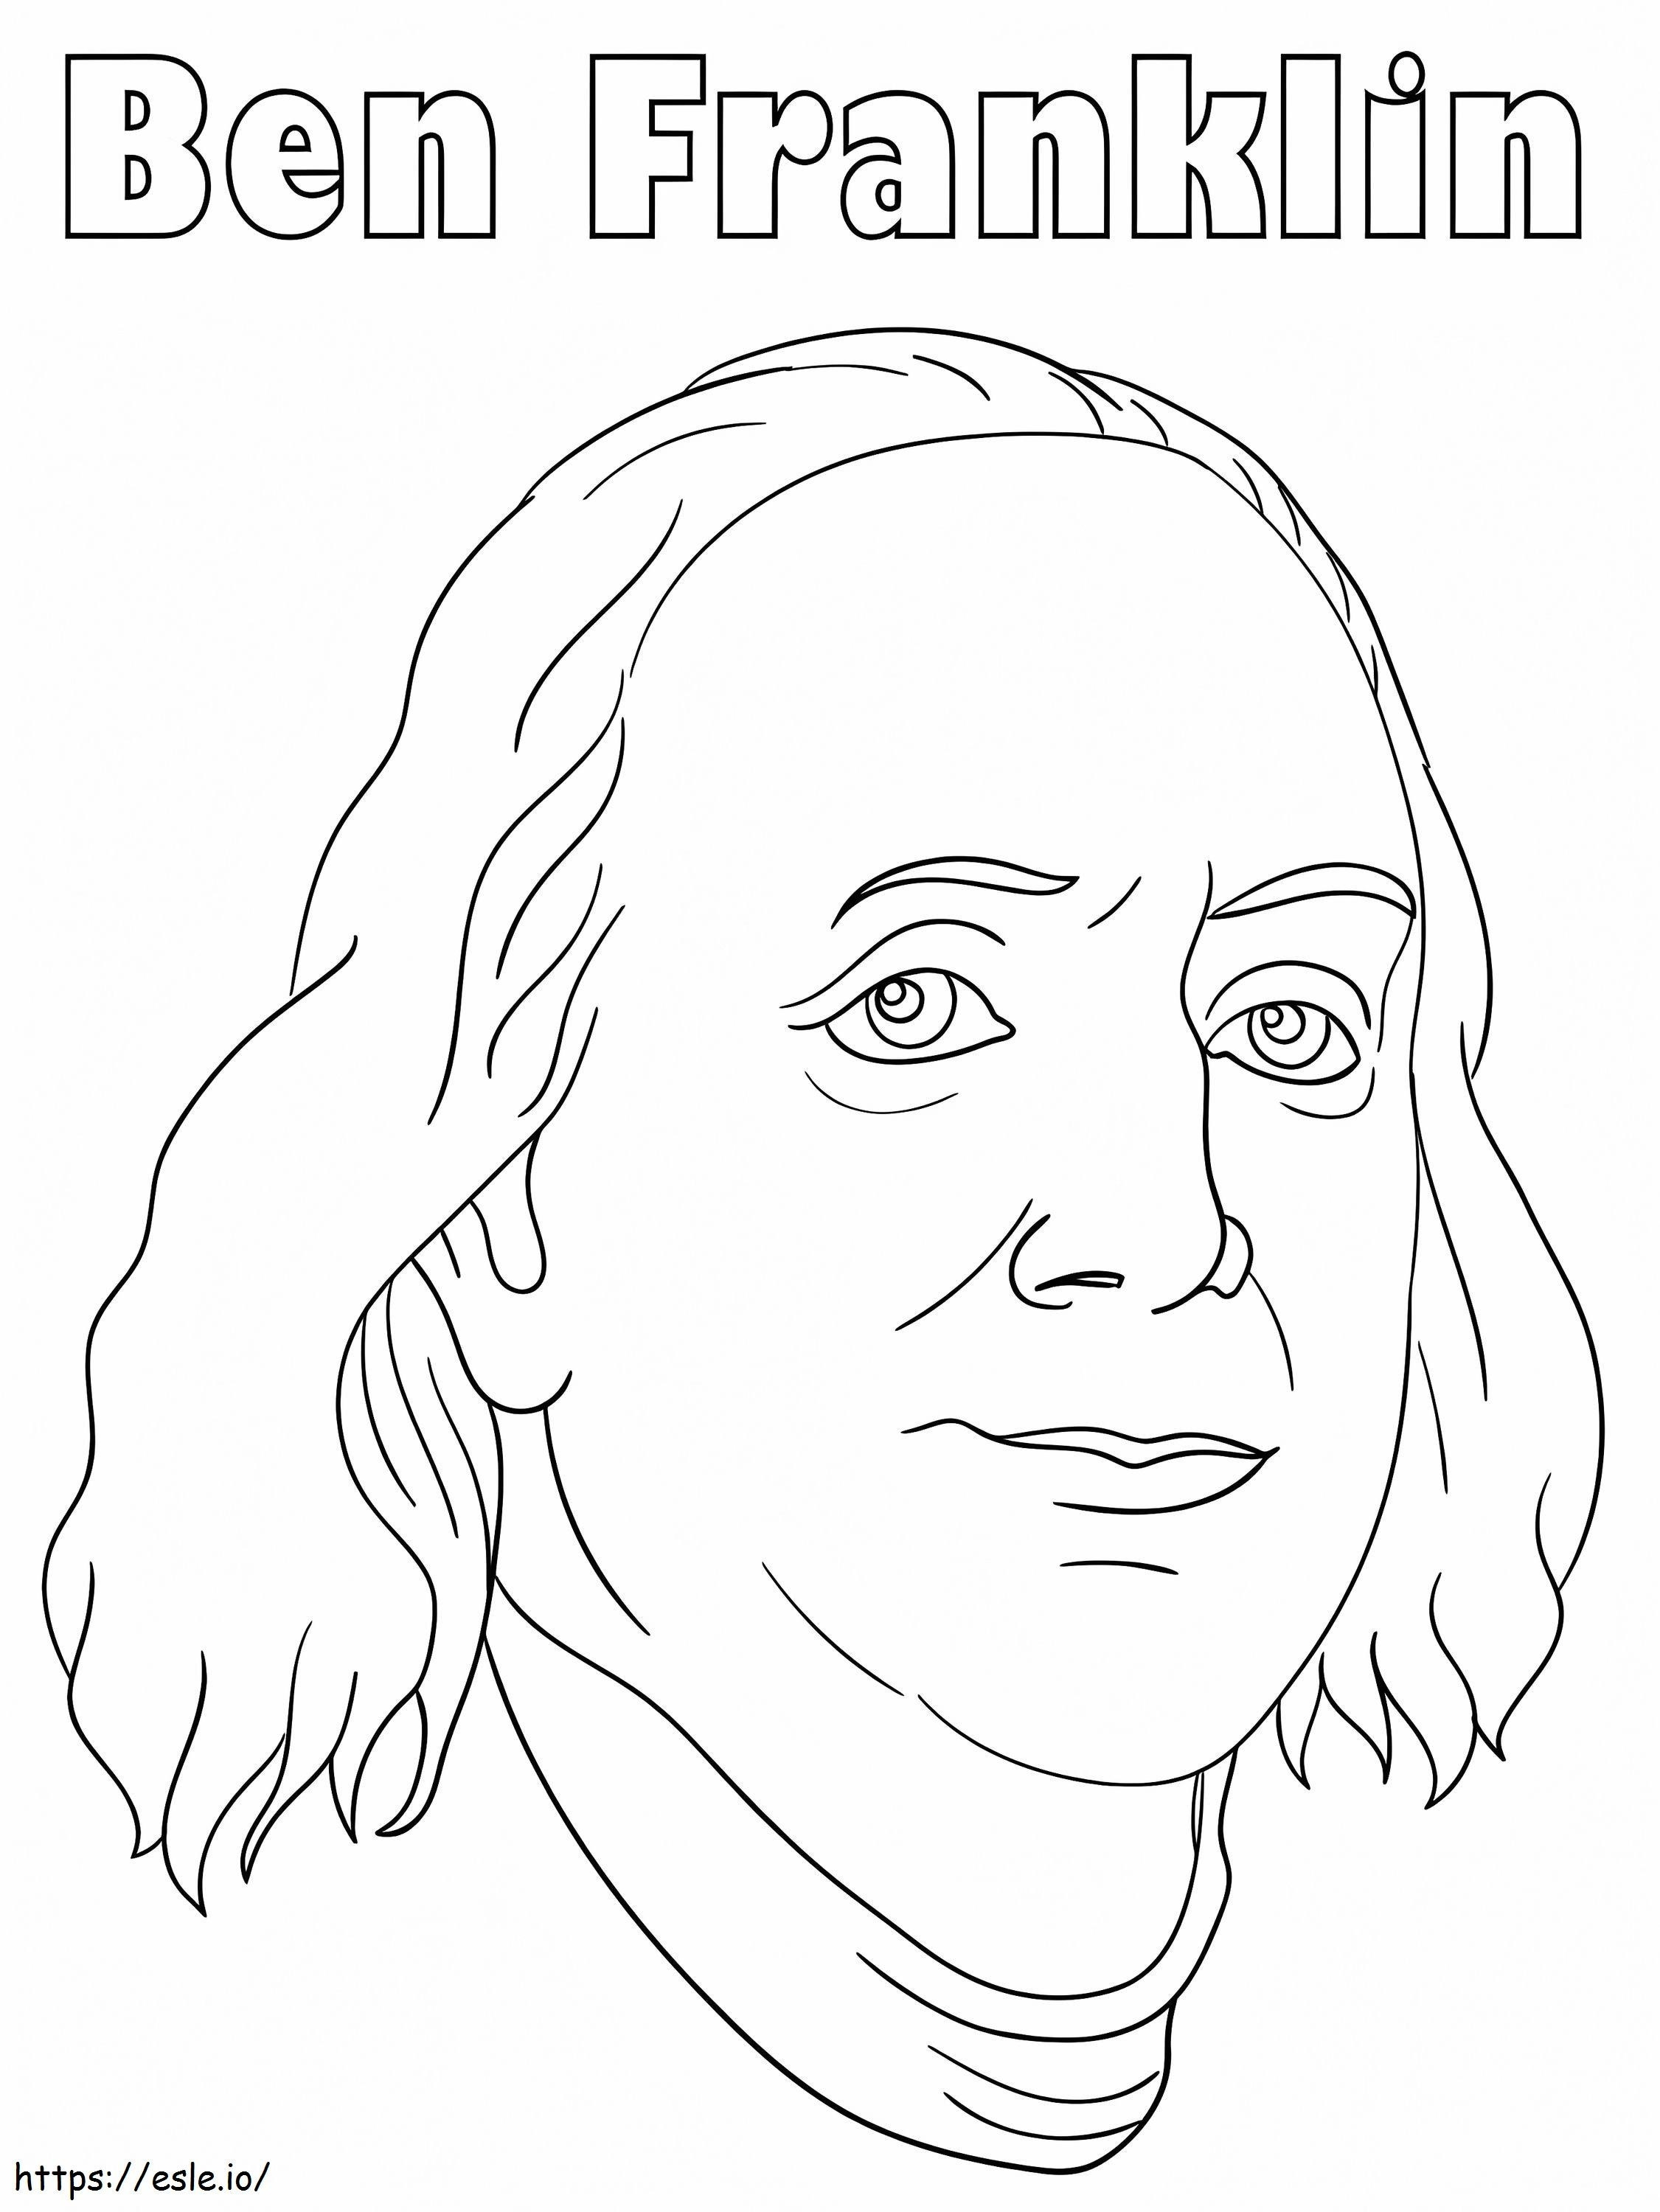 Benjamin Franklin 9 coloring page